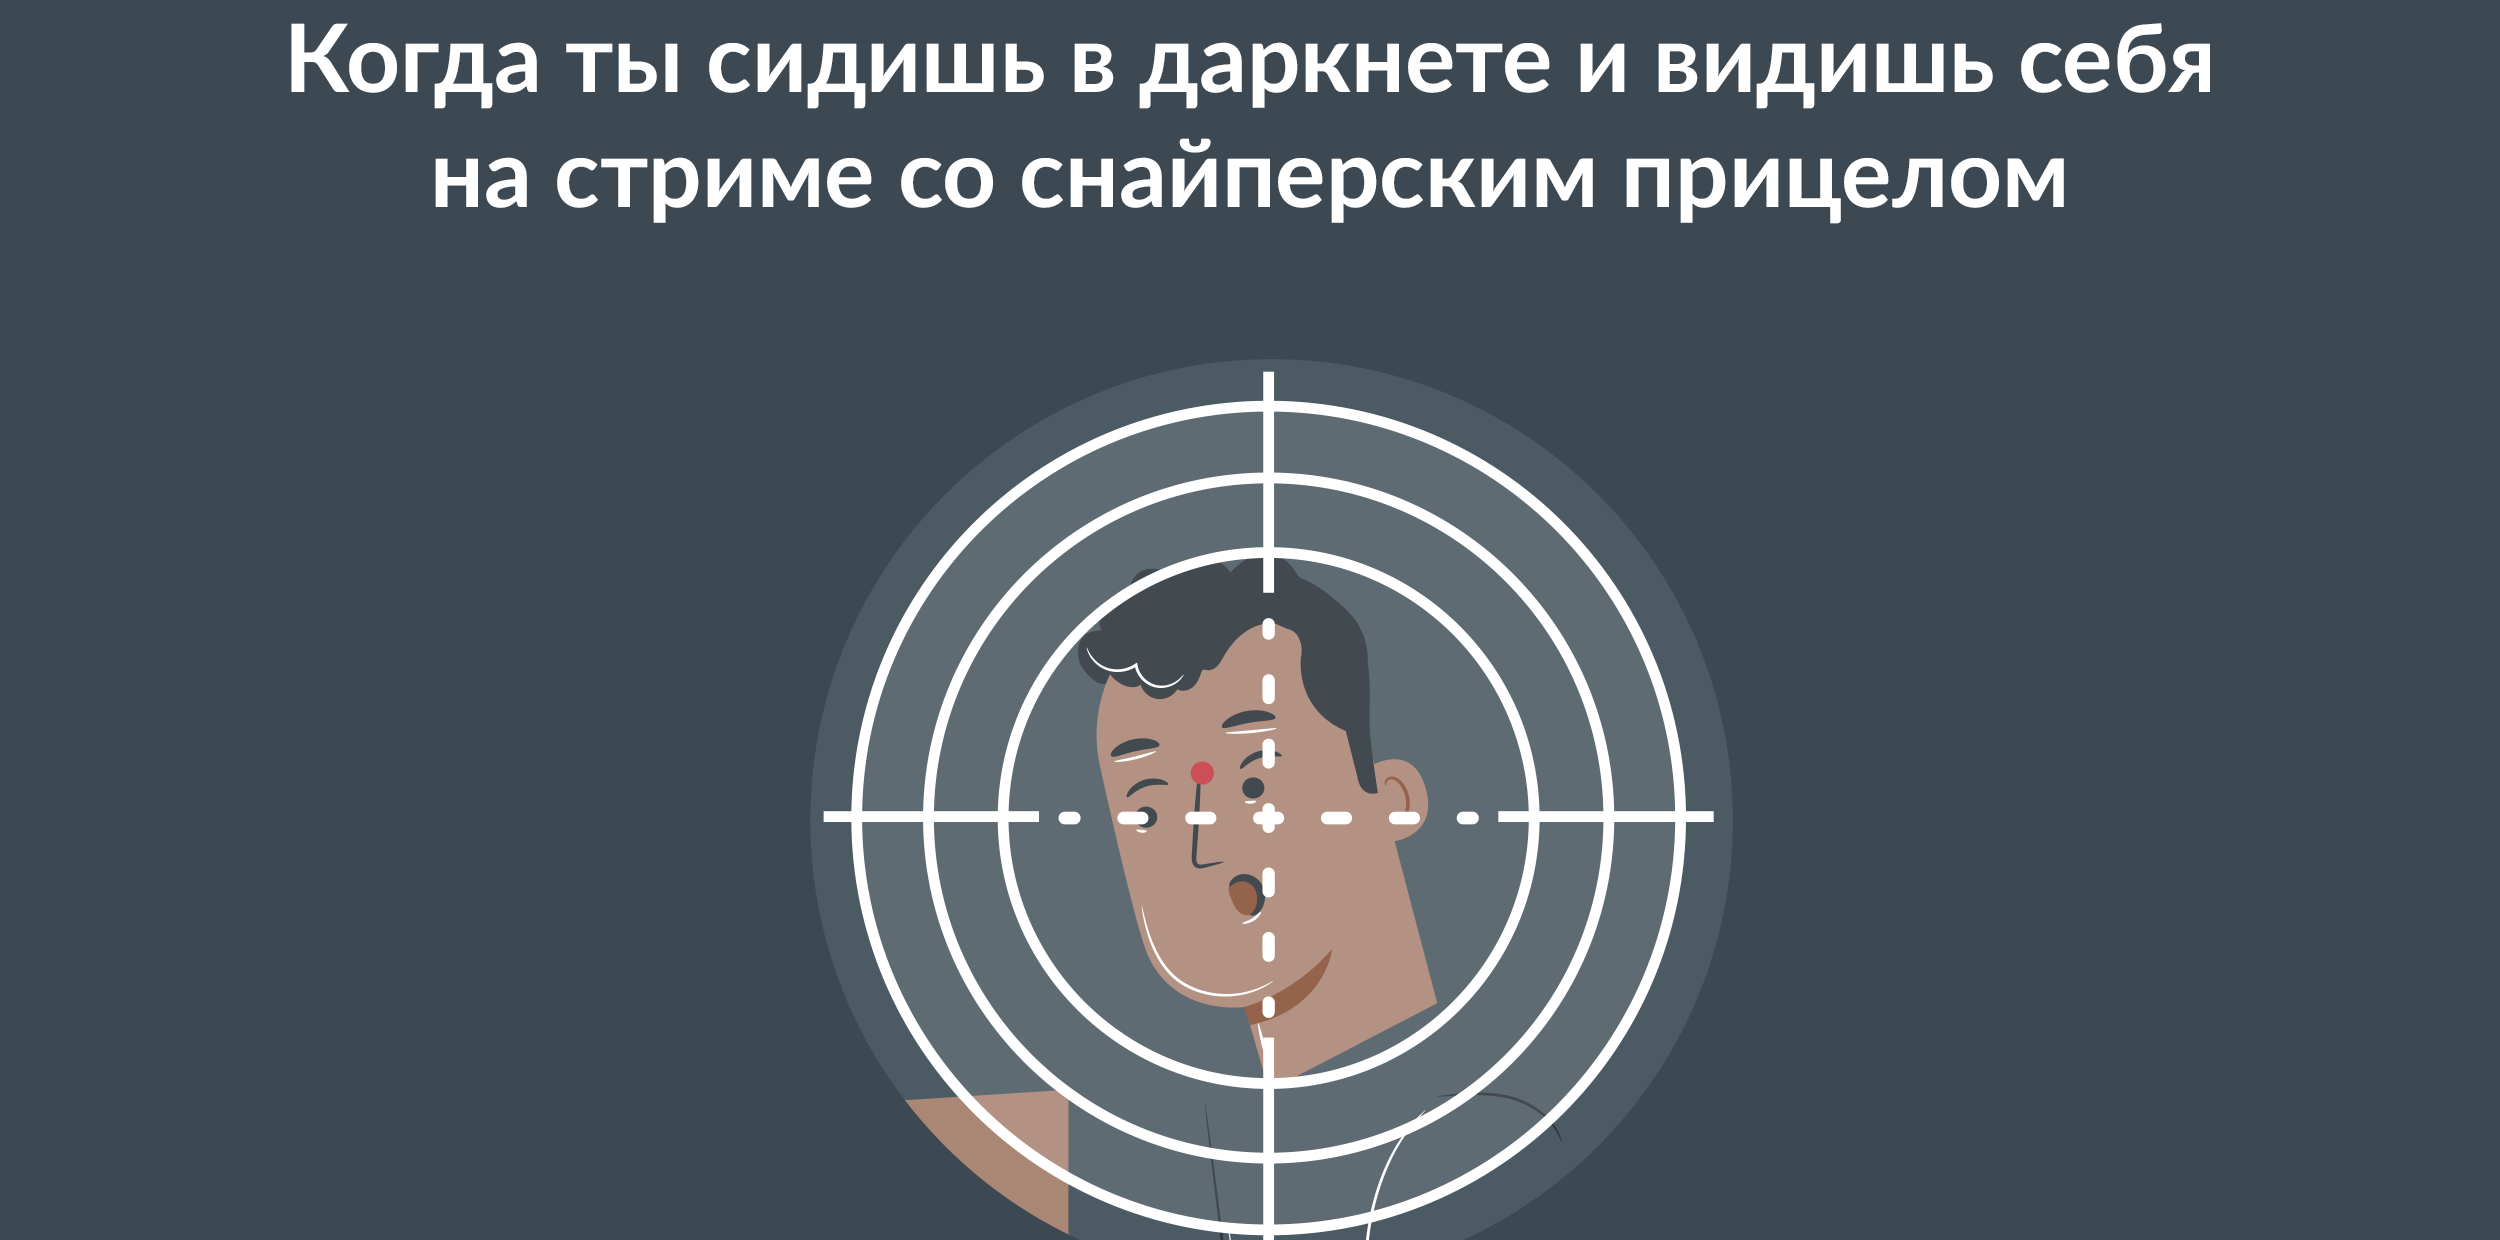 Как искать в darknet скачать тор браузер 3 на русском бесплатно вход на гидру